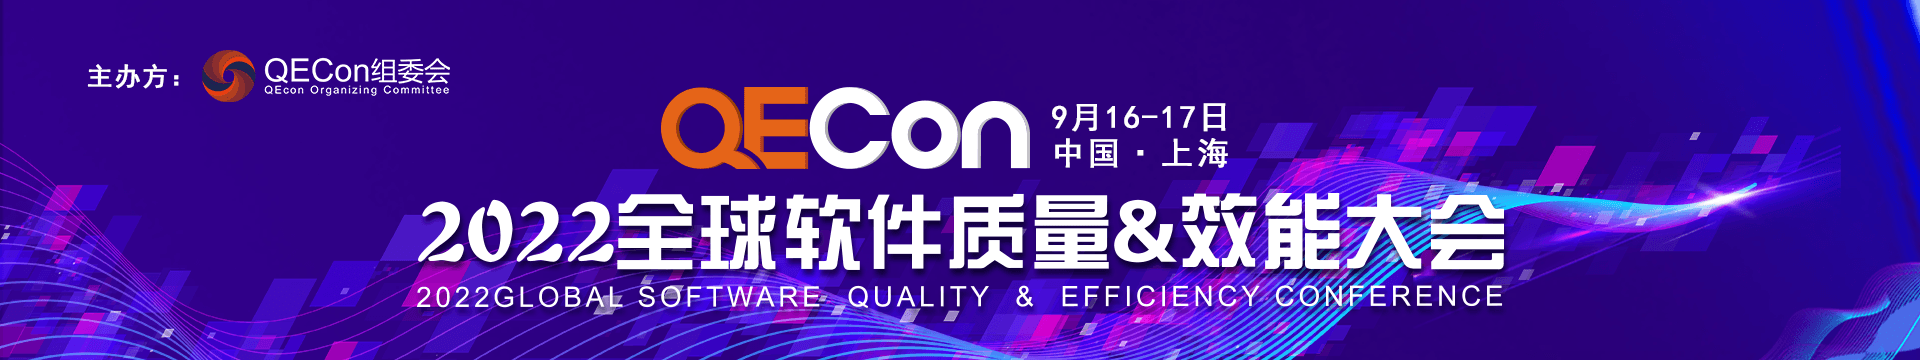 2022QECon全球软件质量&效能大会·上海站